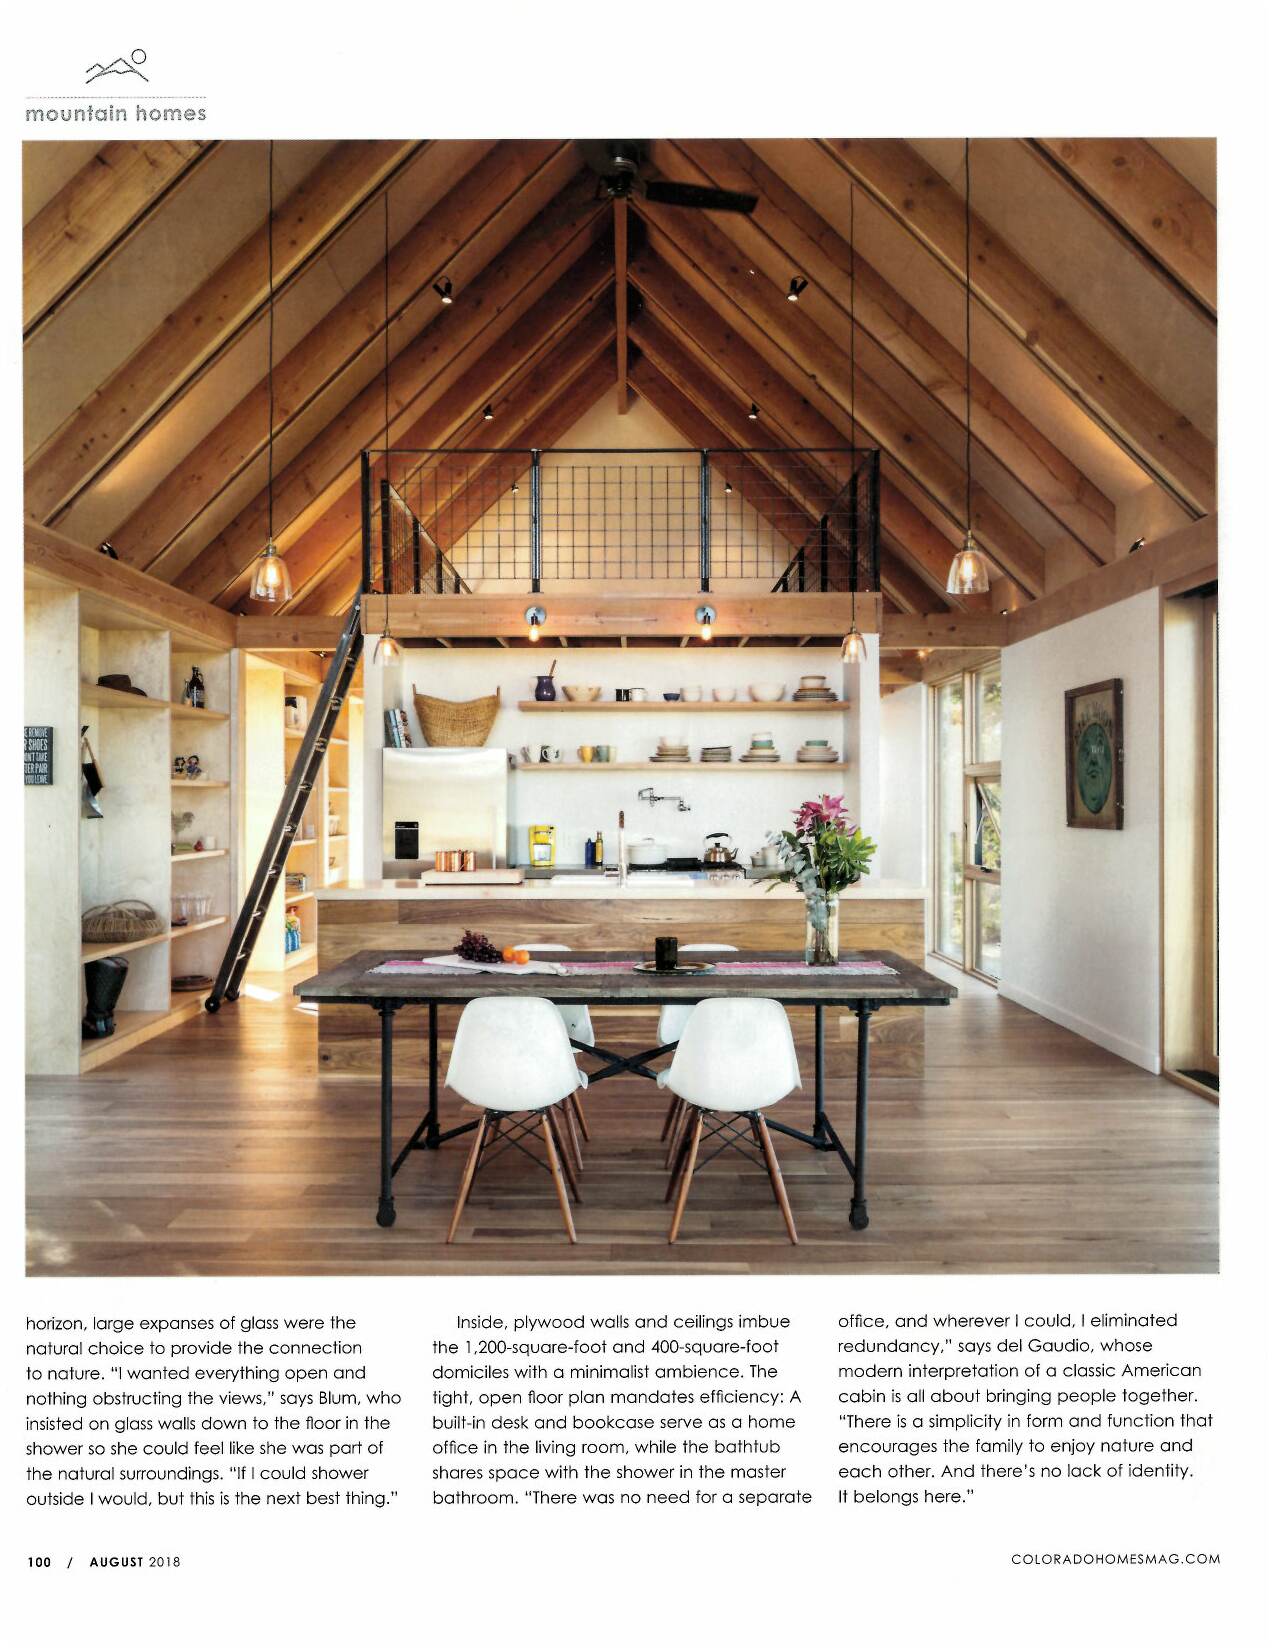 Colorado Homes & Lifestyles | Press for Renée del Gaudio Architecture.